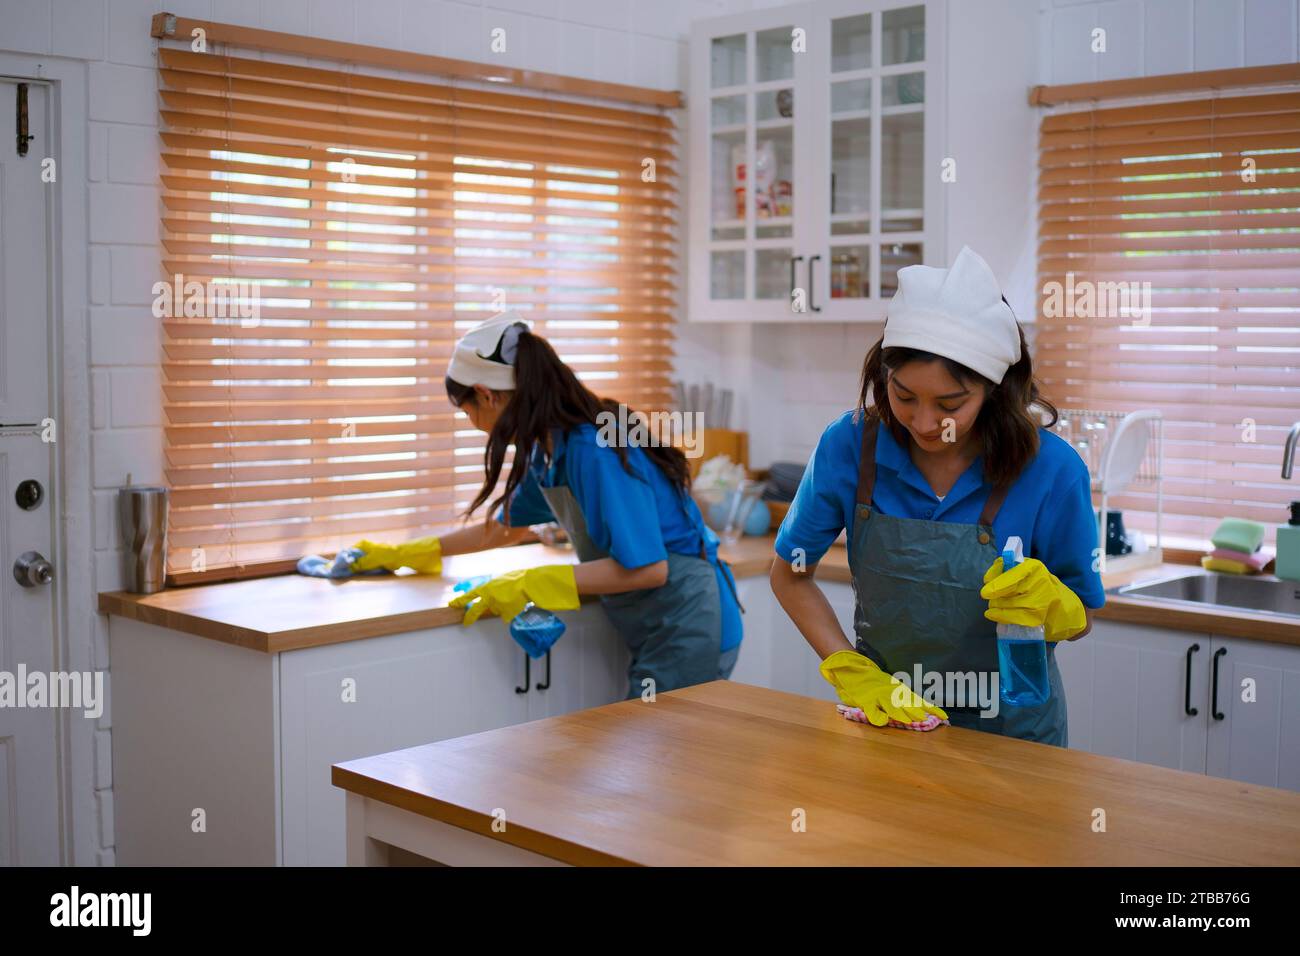 Le personnel de ménage nettoie la maison. Concept de service et d'occupation. Banque D'Images